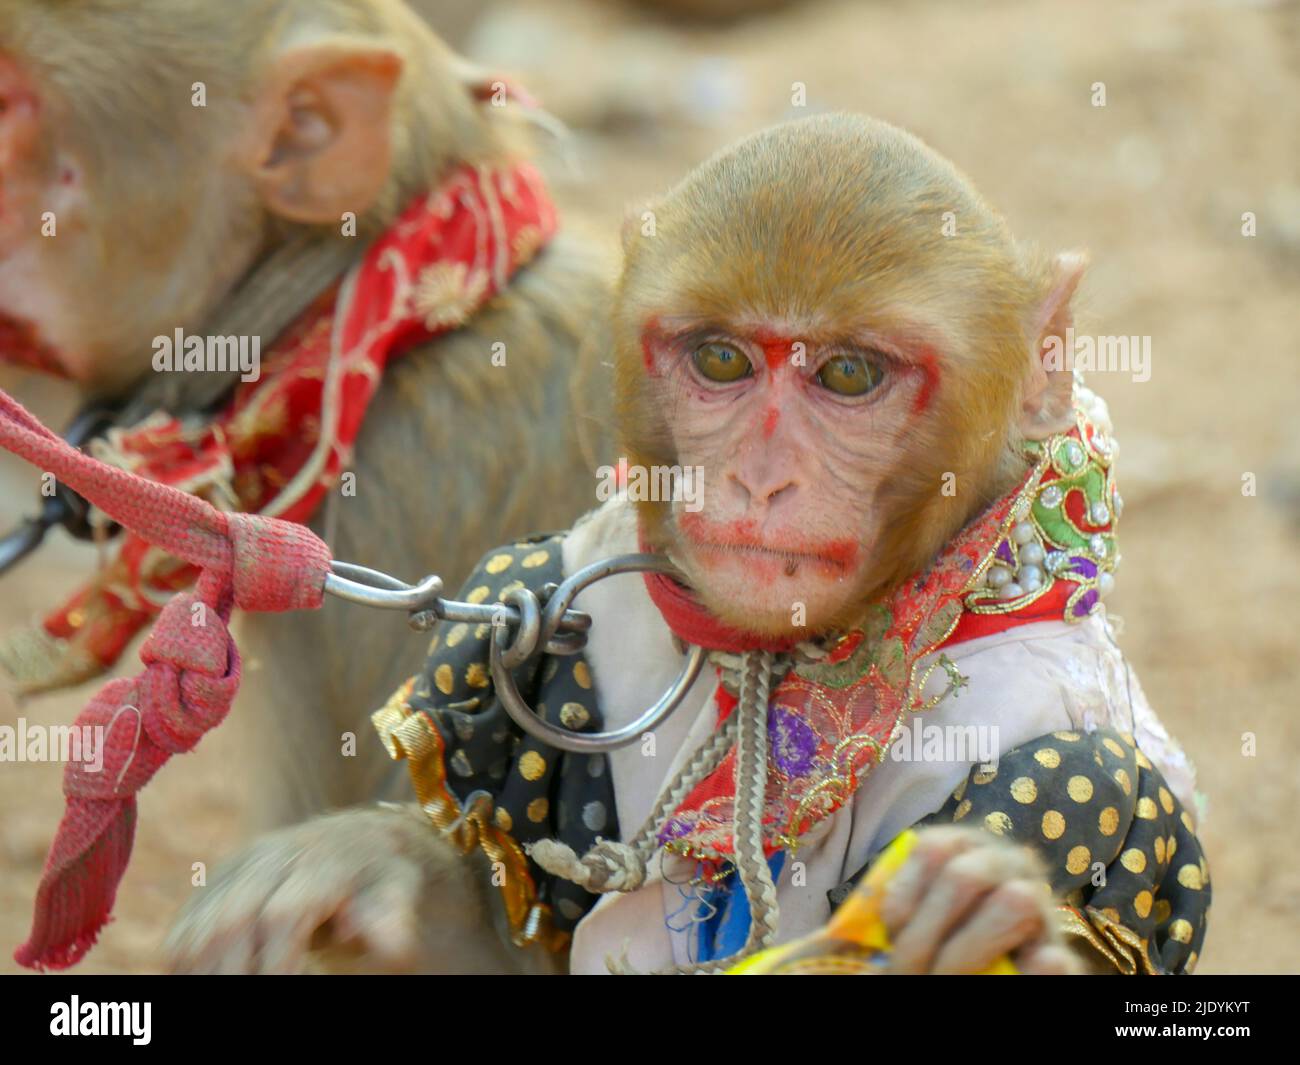 Dekorierter männlicher Affe und weiblicher Affe, Make-up auf ihrem Gesicht, für die Affentanzshow in indien. Stockfoto